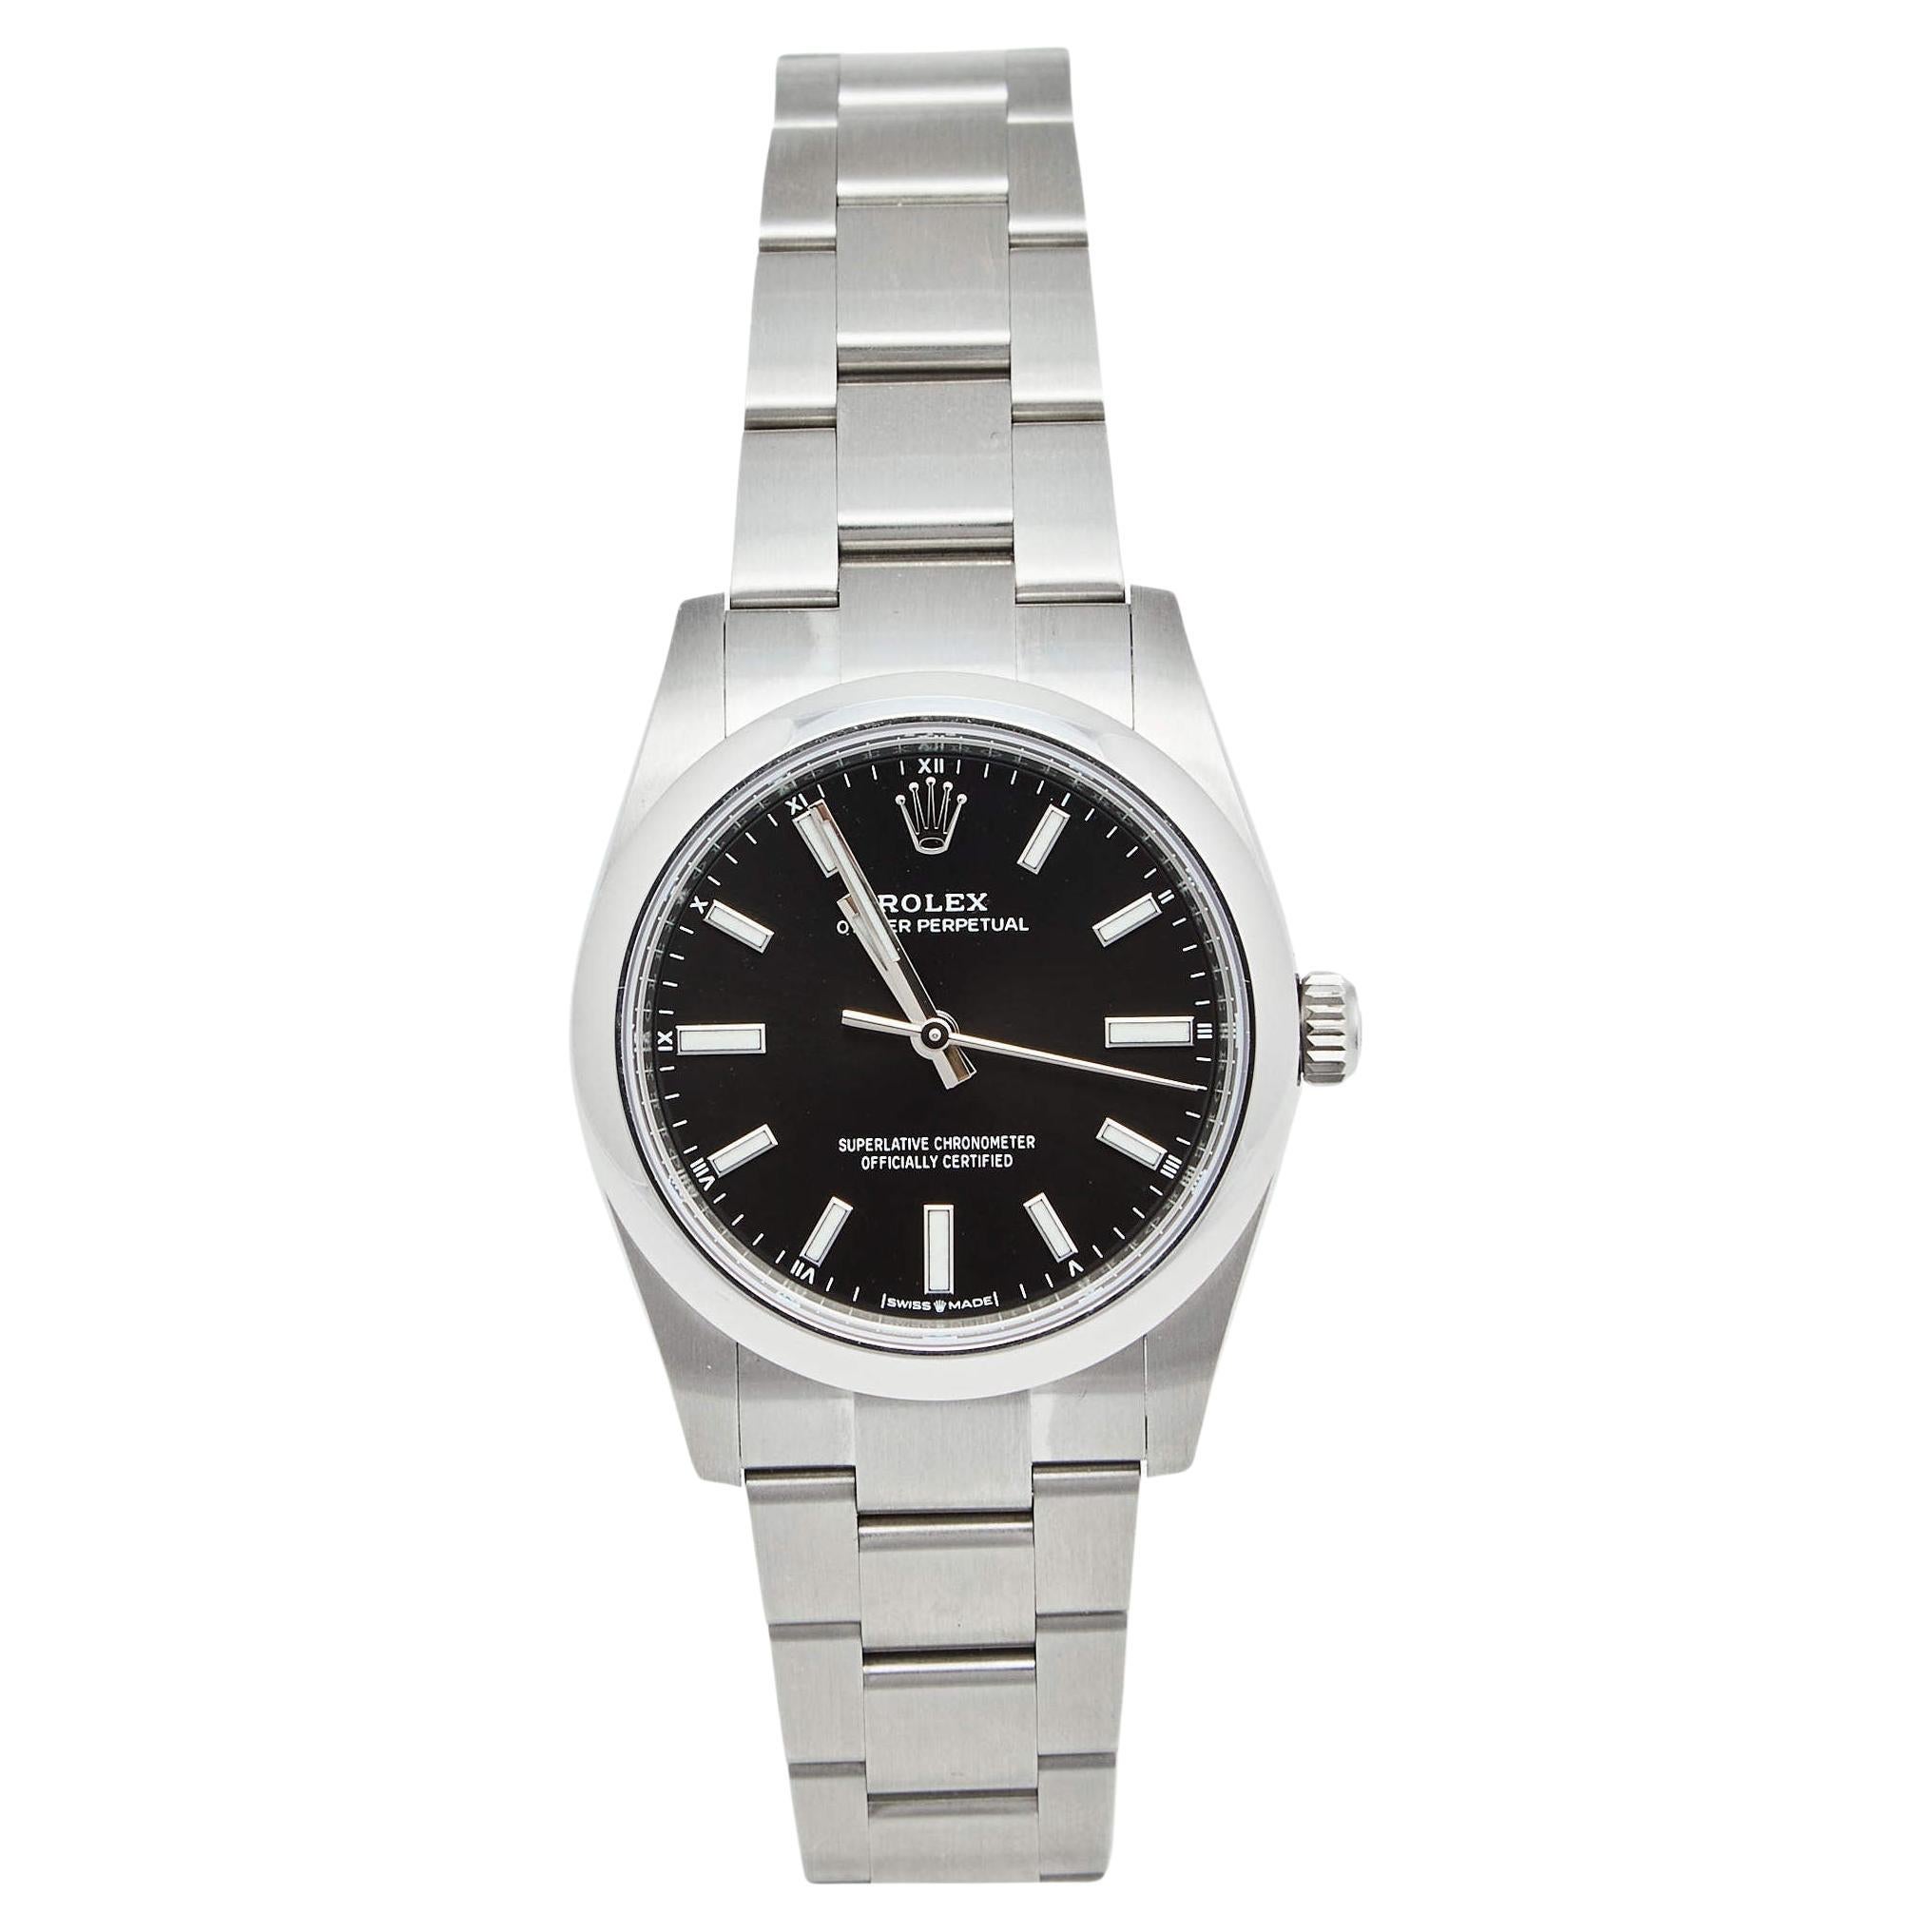 Reloj de pulsera de mujer Rolex Oyster Perpetual 124200 de acero inoxidable negro 34 mm